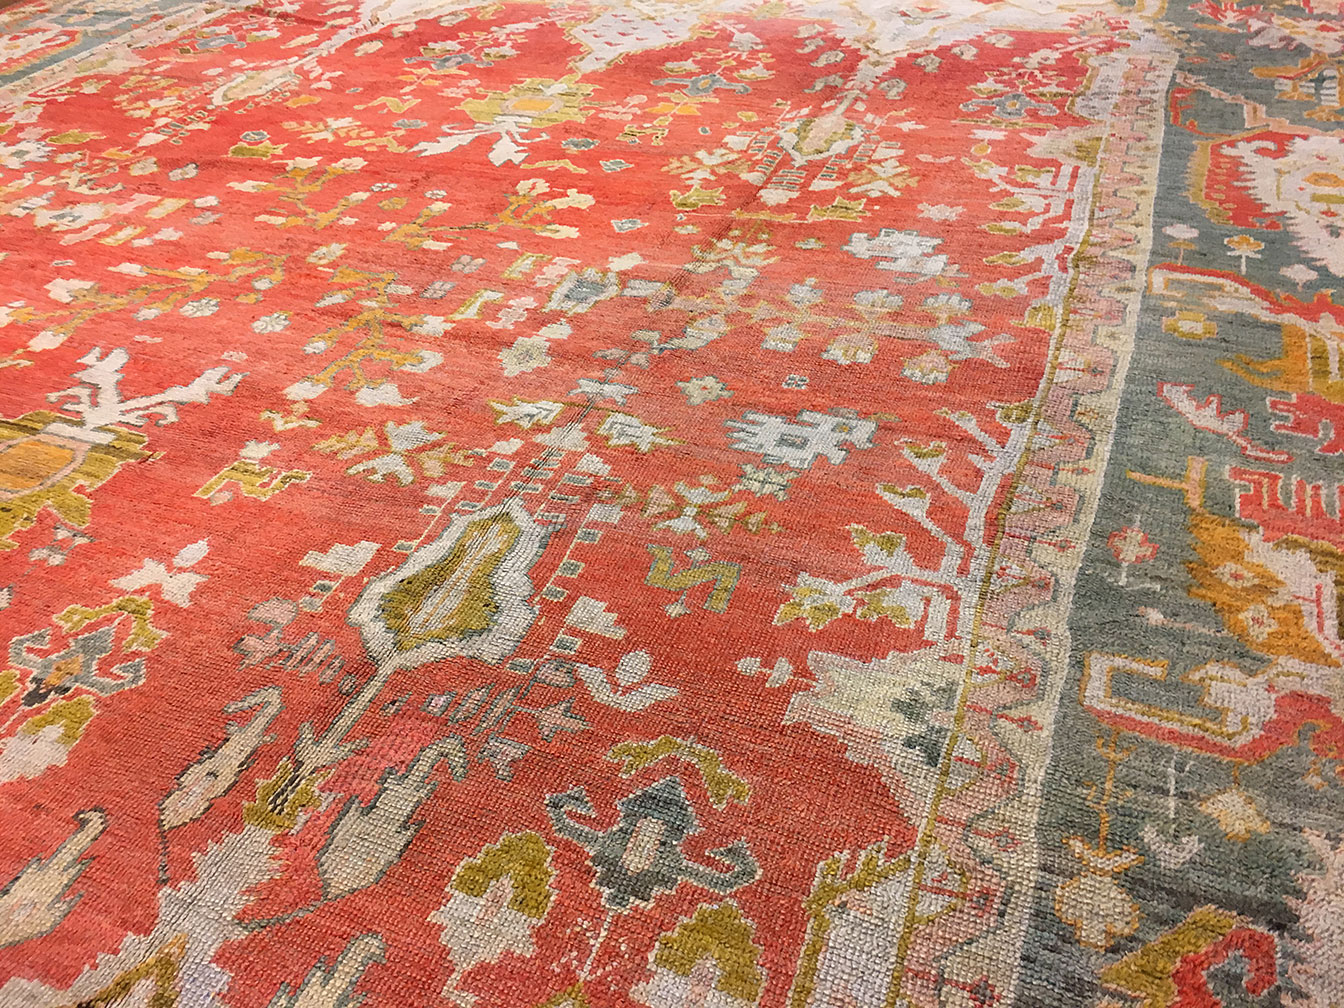 Antique oushak Carpet - # 53493